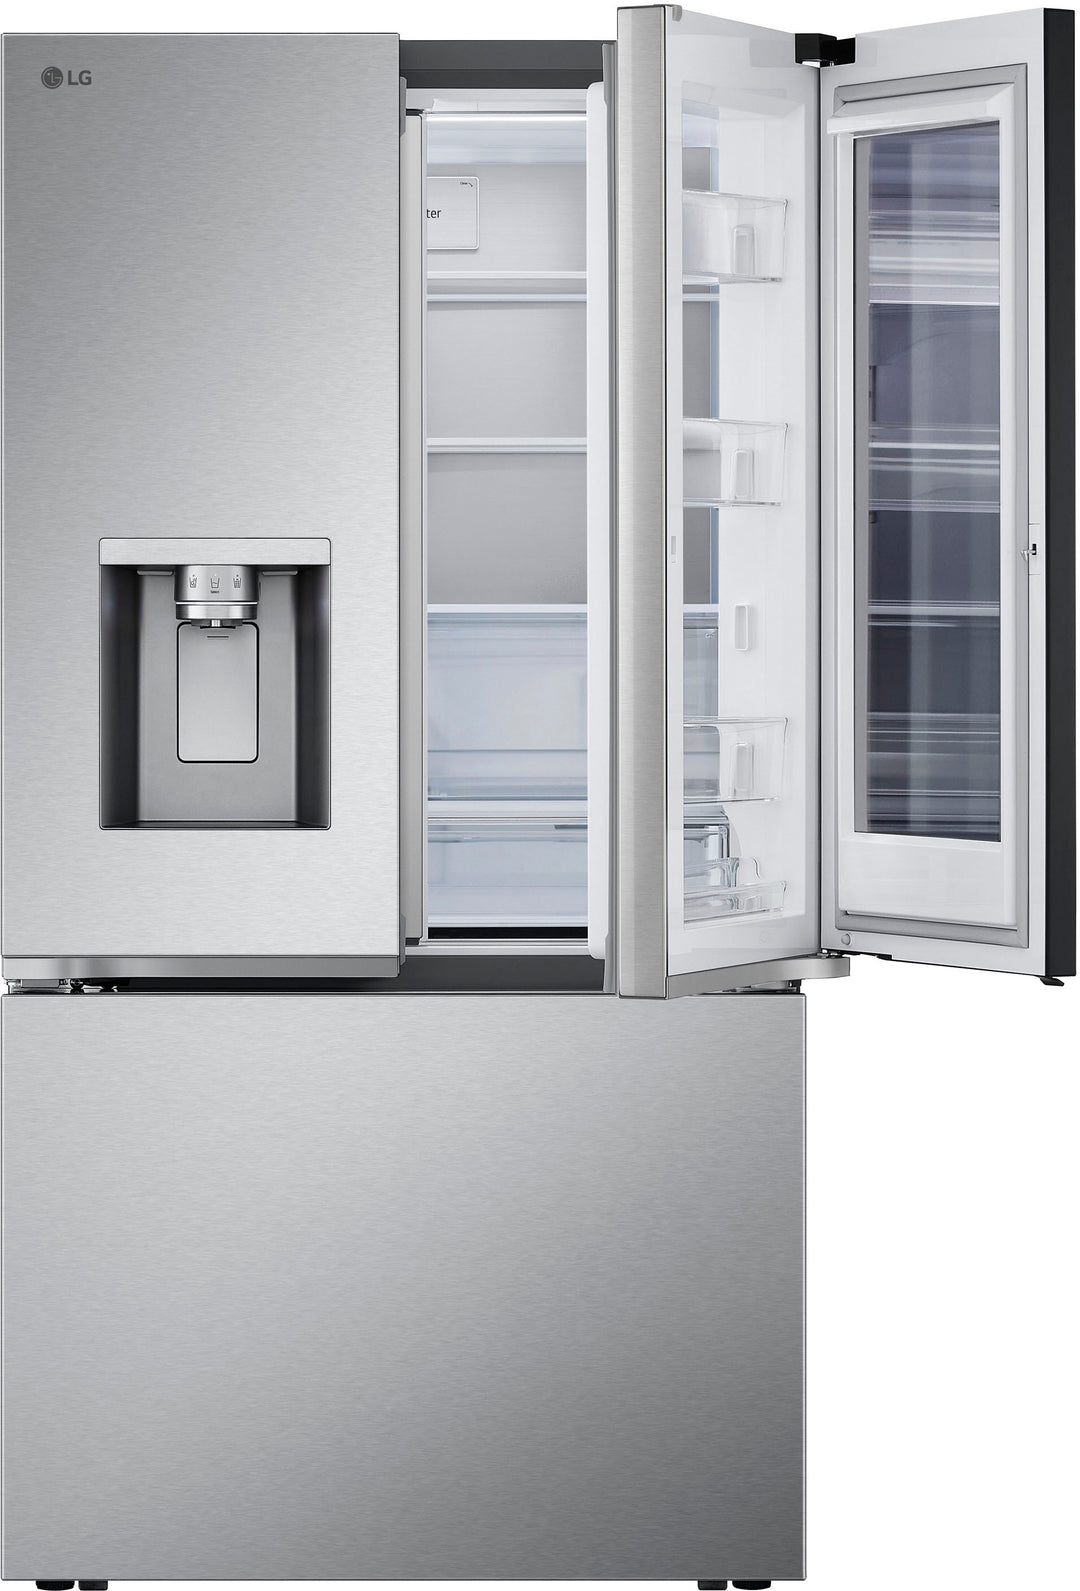 LG - 30.7 cu ft 3 Door French Door Refrigerator with Instaview - Stainless Steel_3